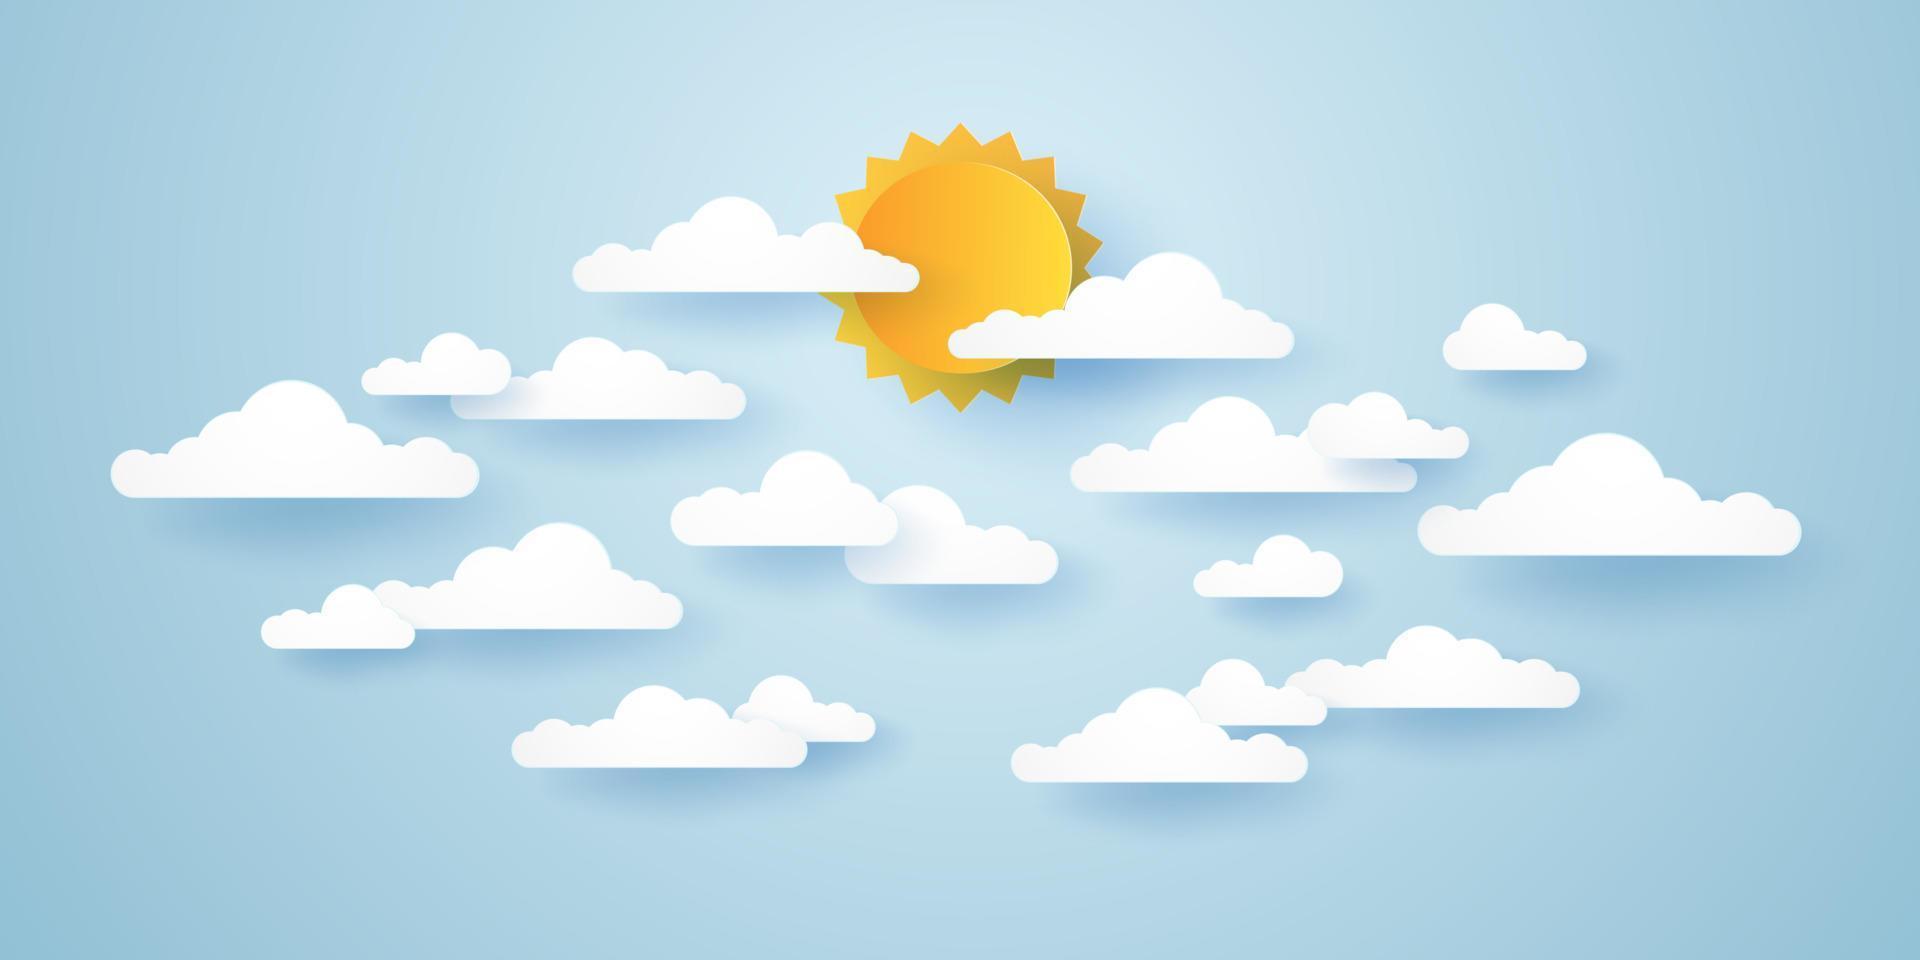 cloudscape, blauwe lucht met wolken en zon, papierkunststijl vector